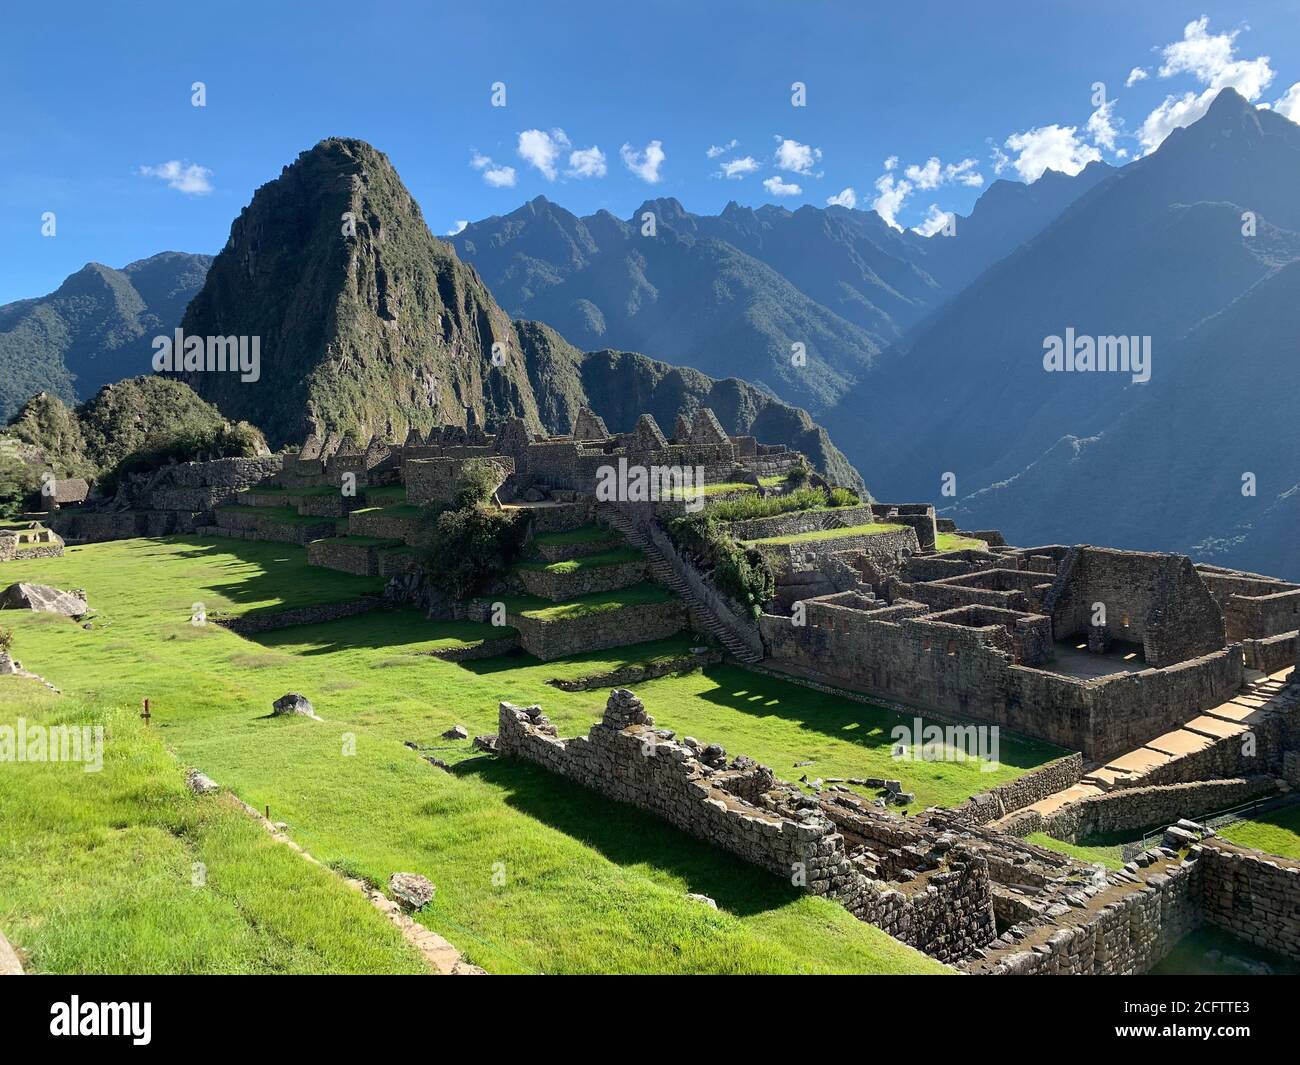 Tolles Machu Picchu in Peru. Berühmtes peruanisches Wahrzeichen. Alte inka-Zitadelle. Berg Huayna Picchu. Blick auf die majestätischen Ruinen der Inka-Stadt. Stockfoto